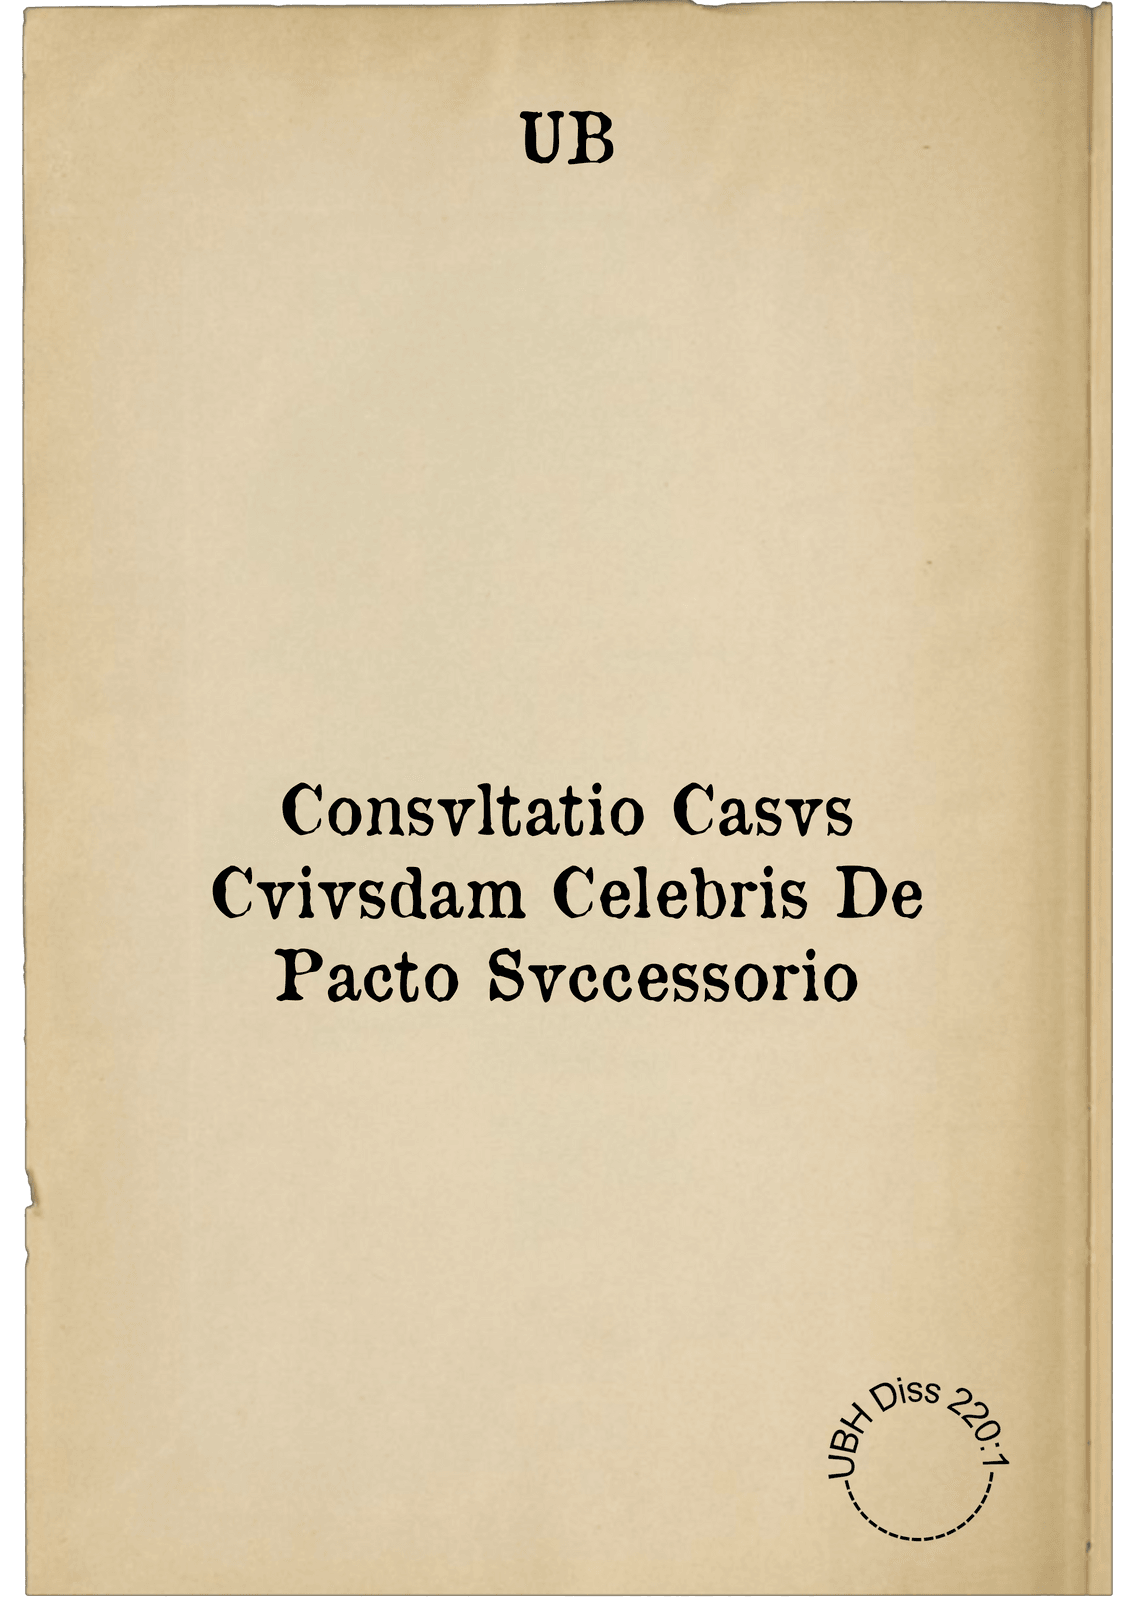 Consvltatio Casvs Cvivsdam Celebris De Pacto Svccessorio